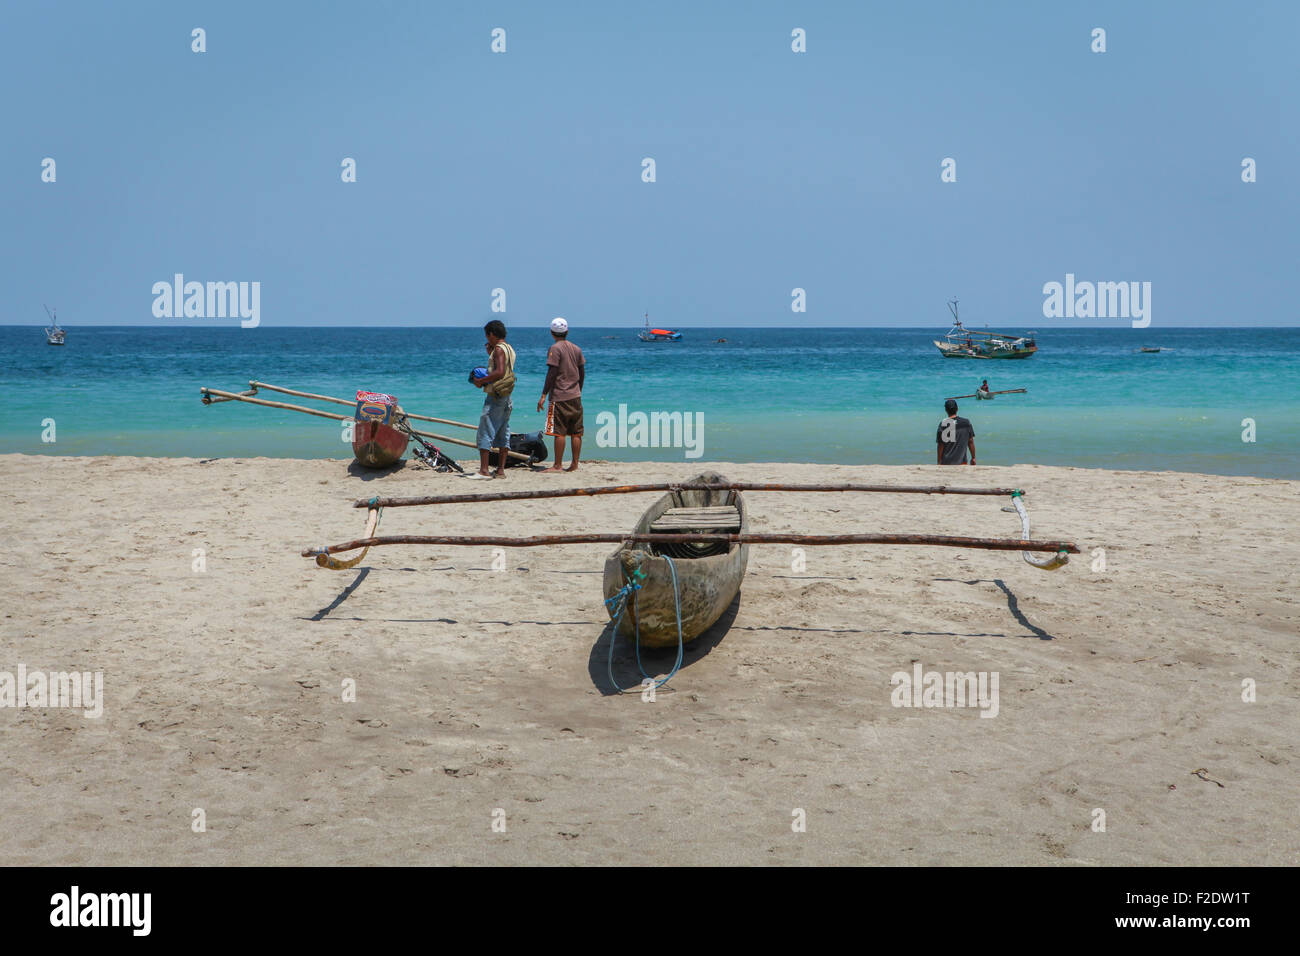 Des canoës et des pêcheurs sur la plage, dans un fond de l'océan Indien, sont vus à Wanokaka, à l'ouest de Sumba, à l'est de Nusa Tenggara, en Indonésie. Banque D'Images